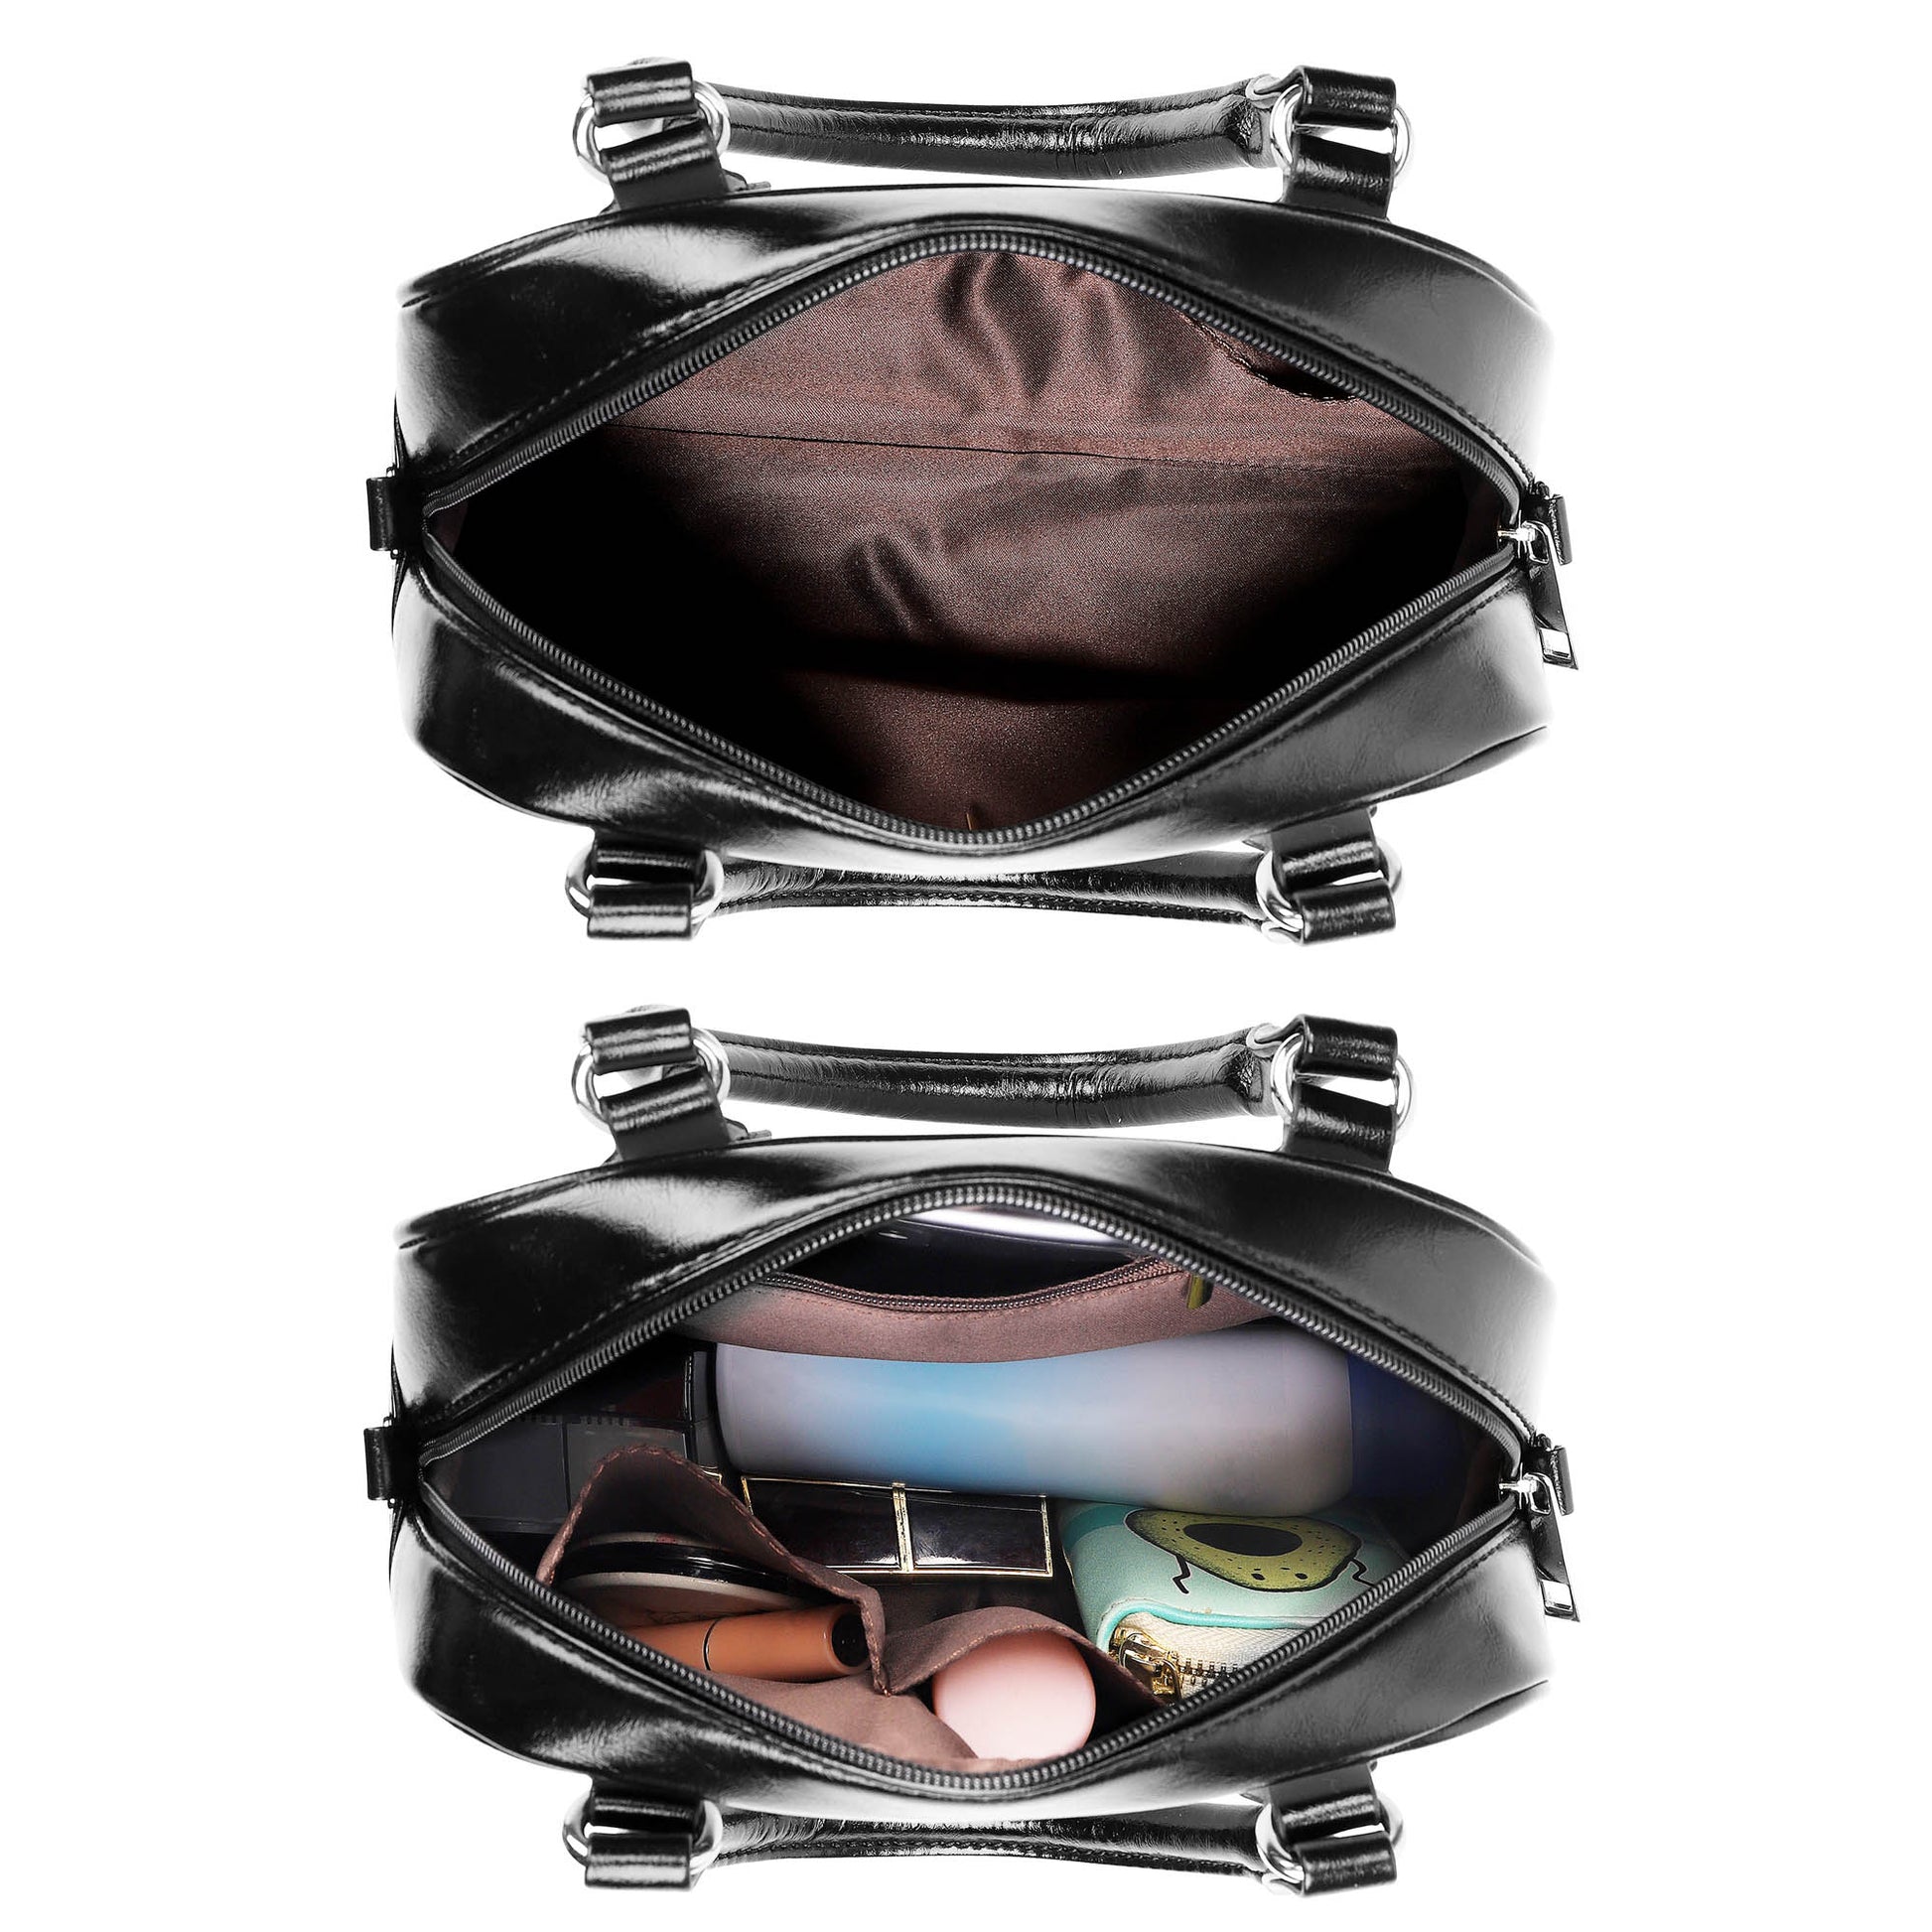 Darroch Tartan Shoulder Handbags - Tartanvibesclothing